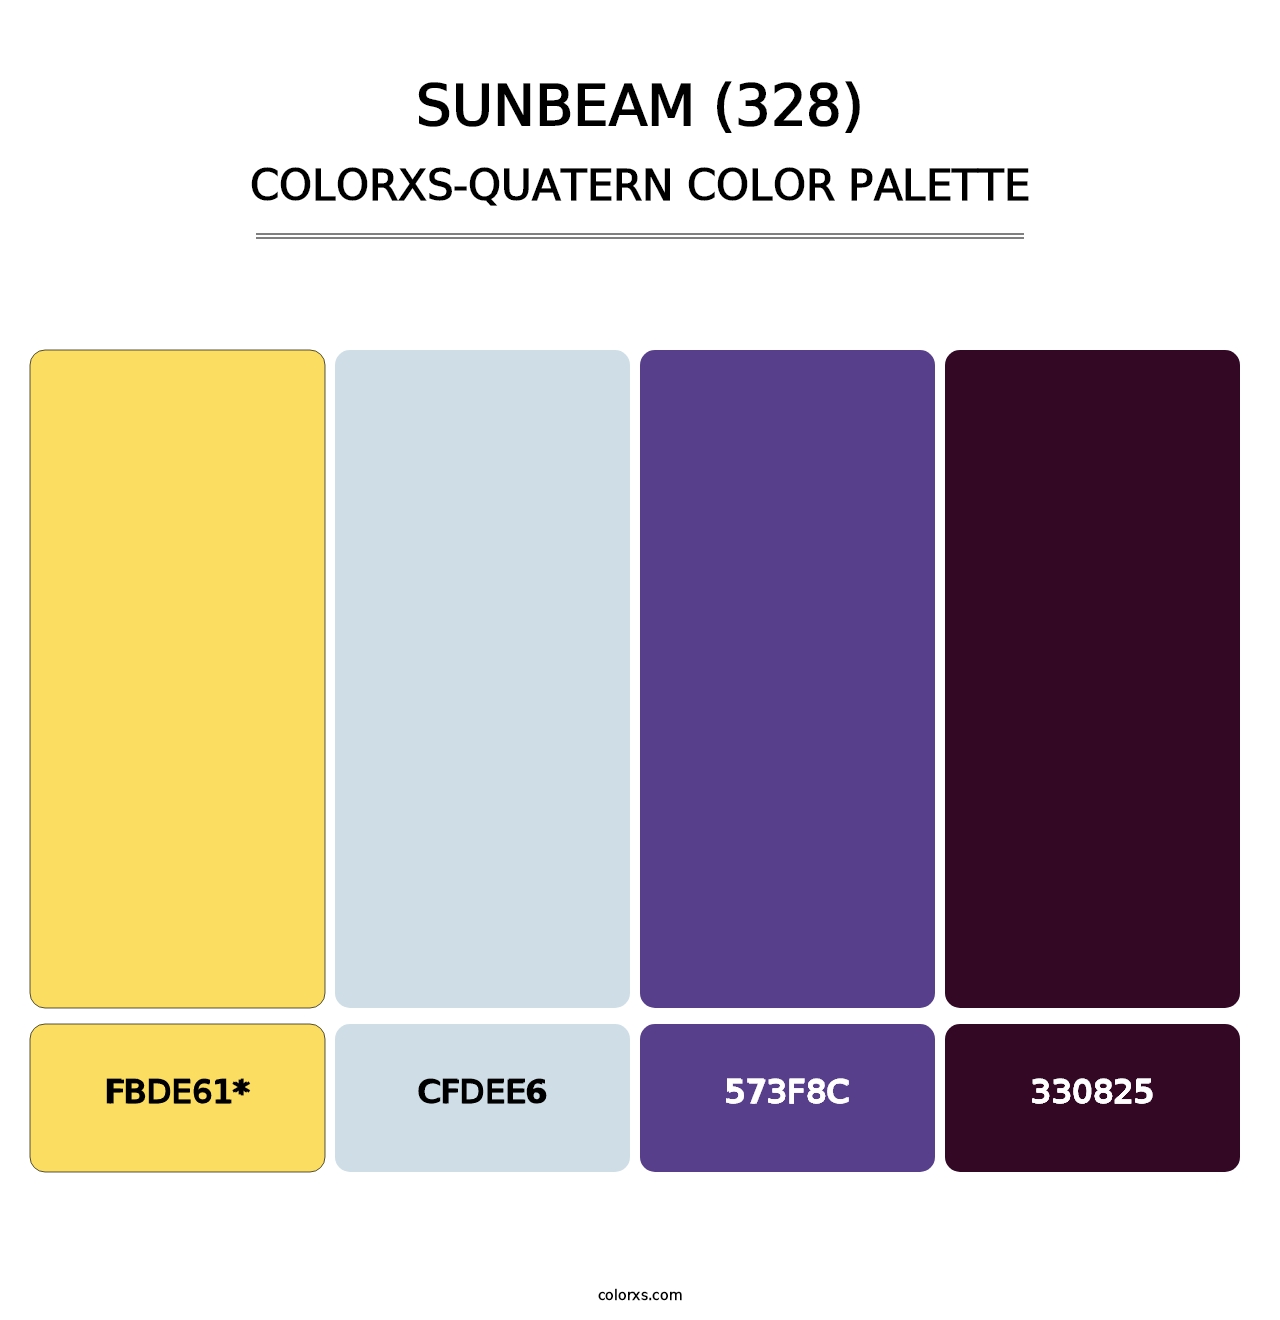 Sunbeam (328) - Colorxs Quatern Palette